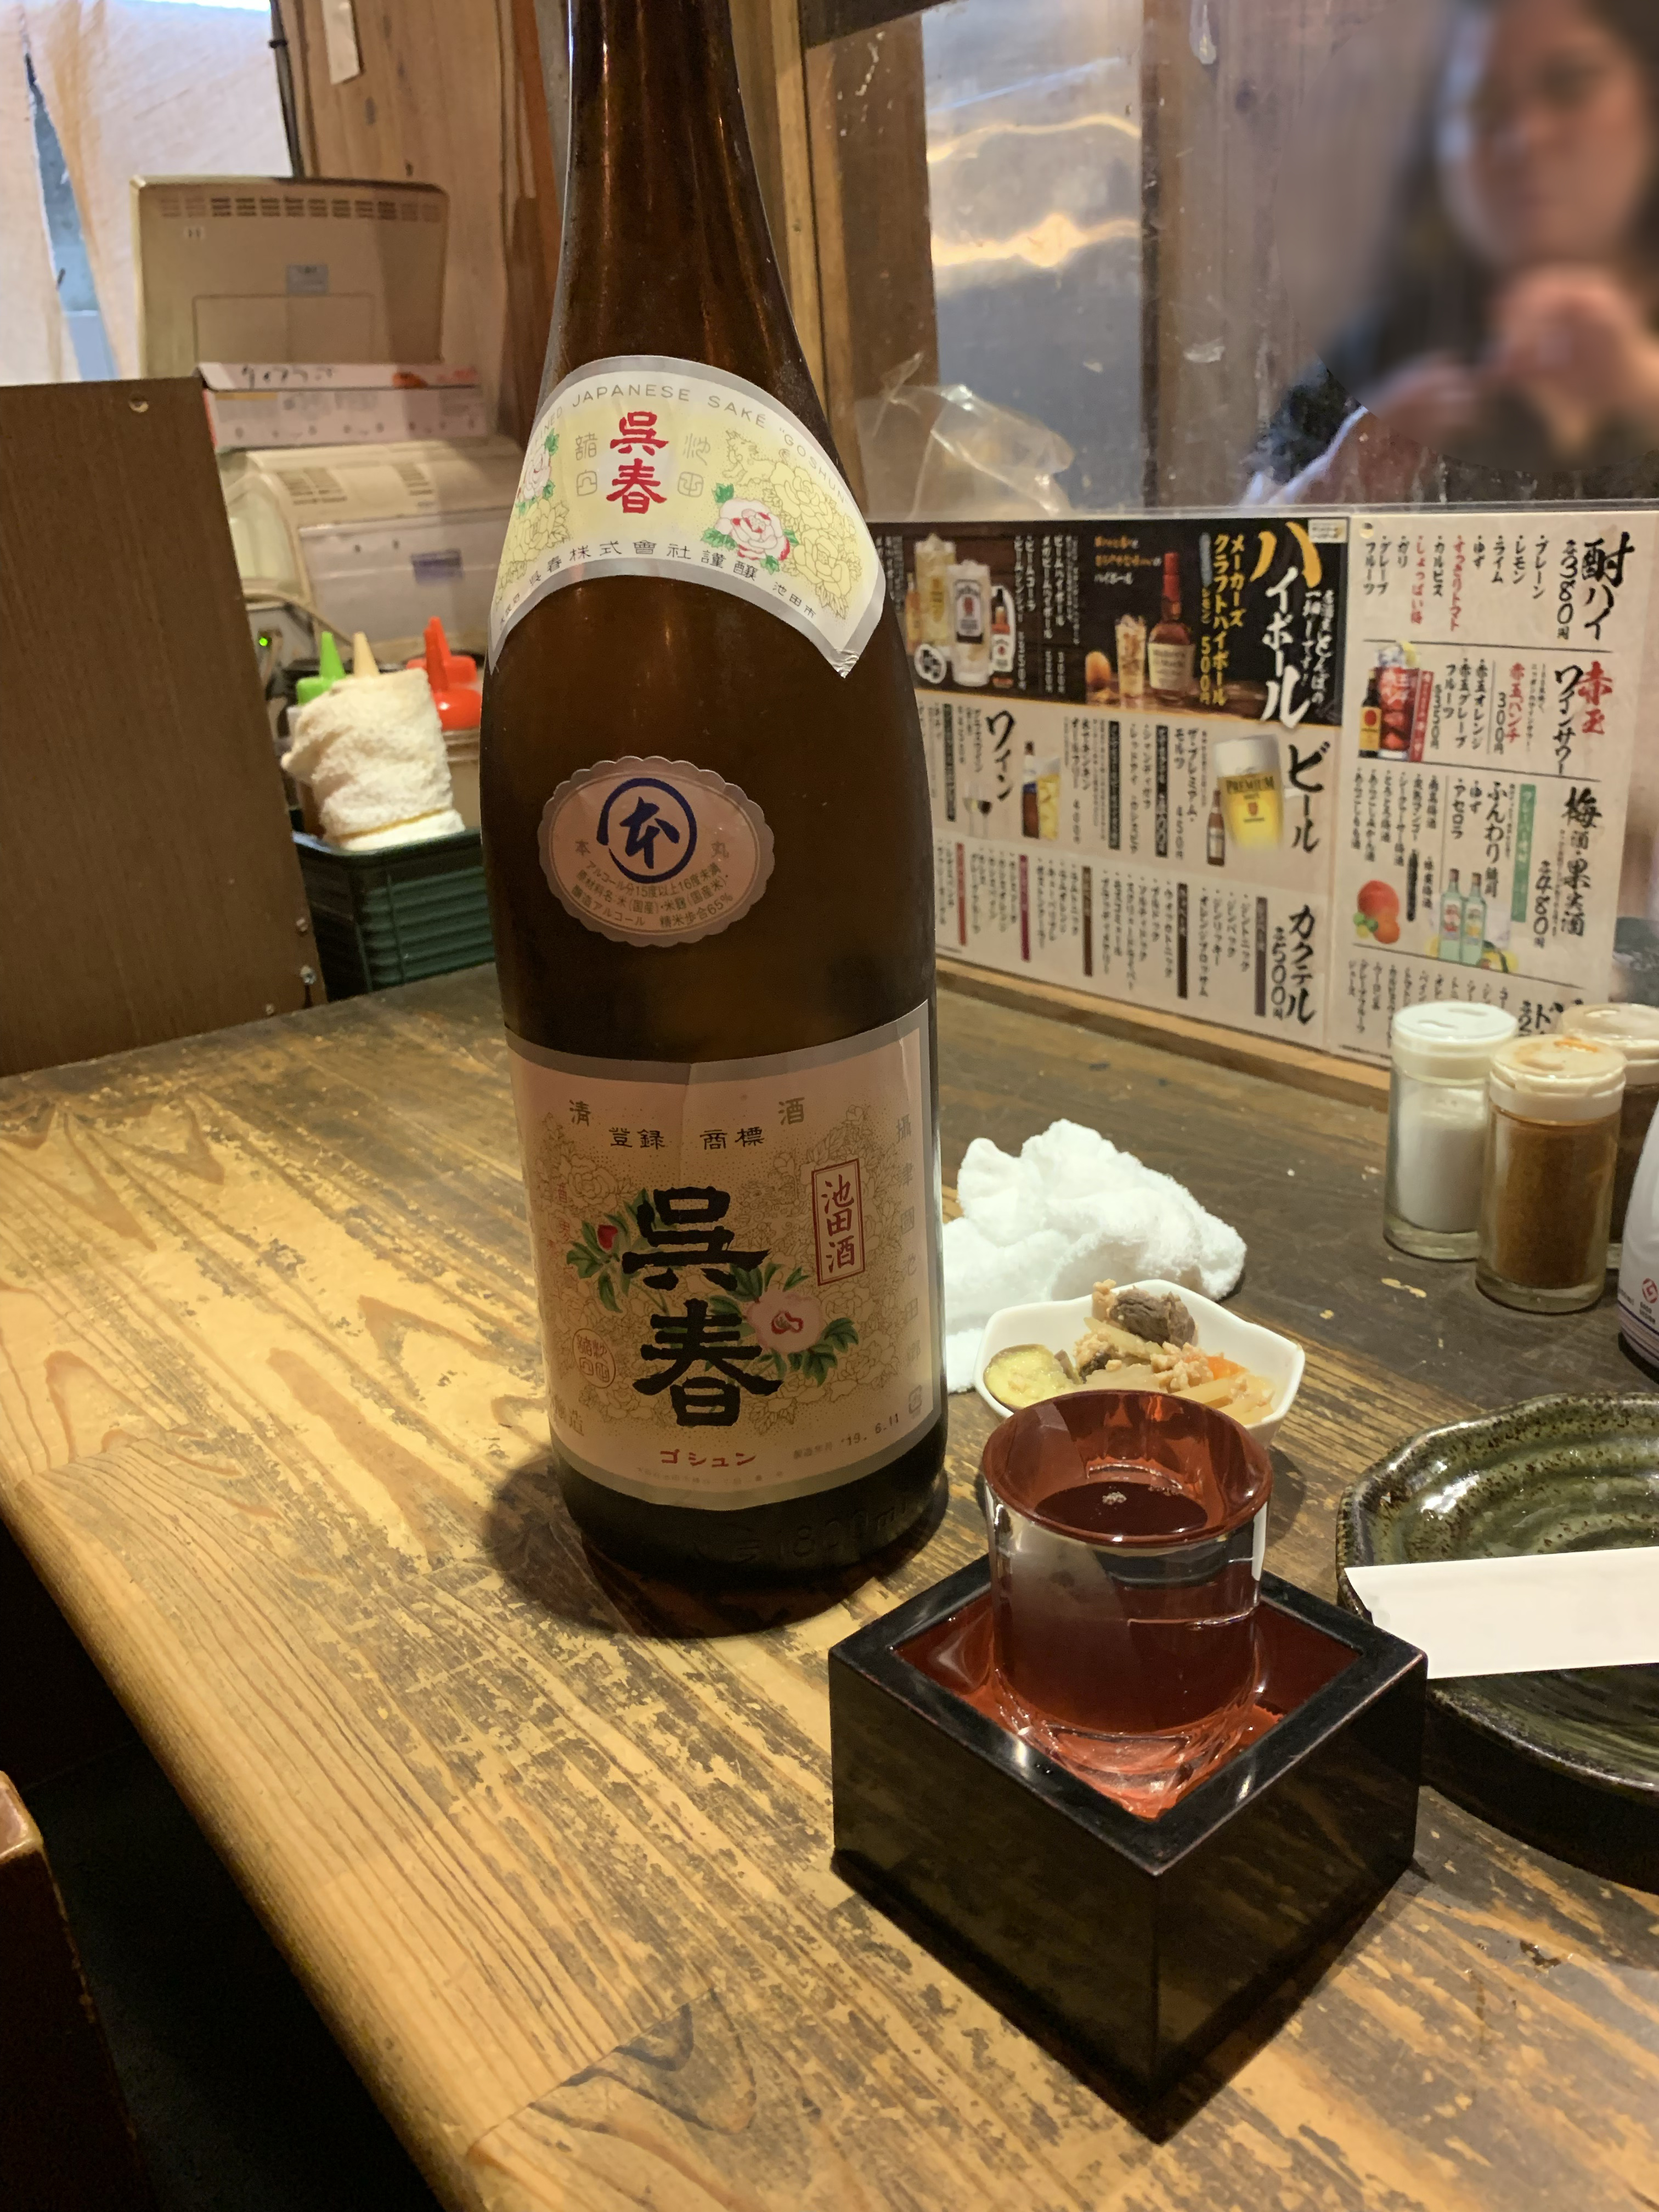 滿瀉至箱子的清酒可以喝｜日本餐廳用餐禮儀、文化、禁忌